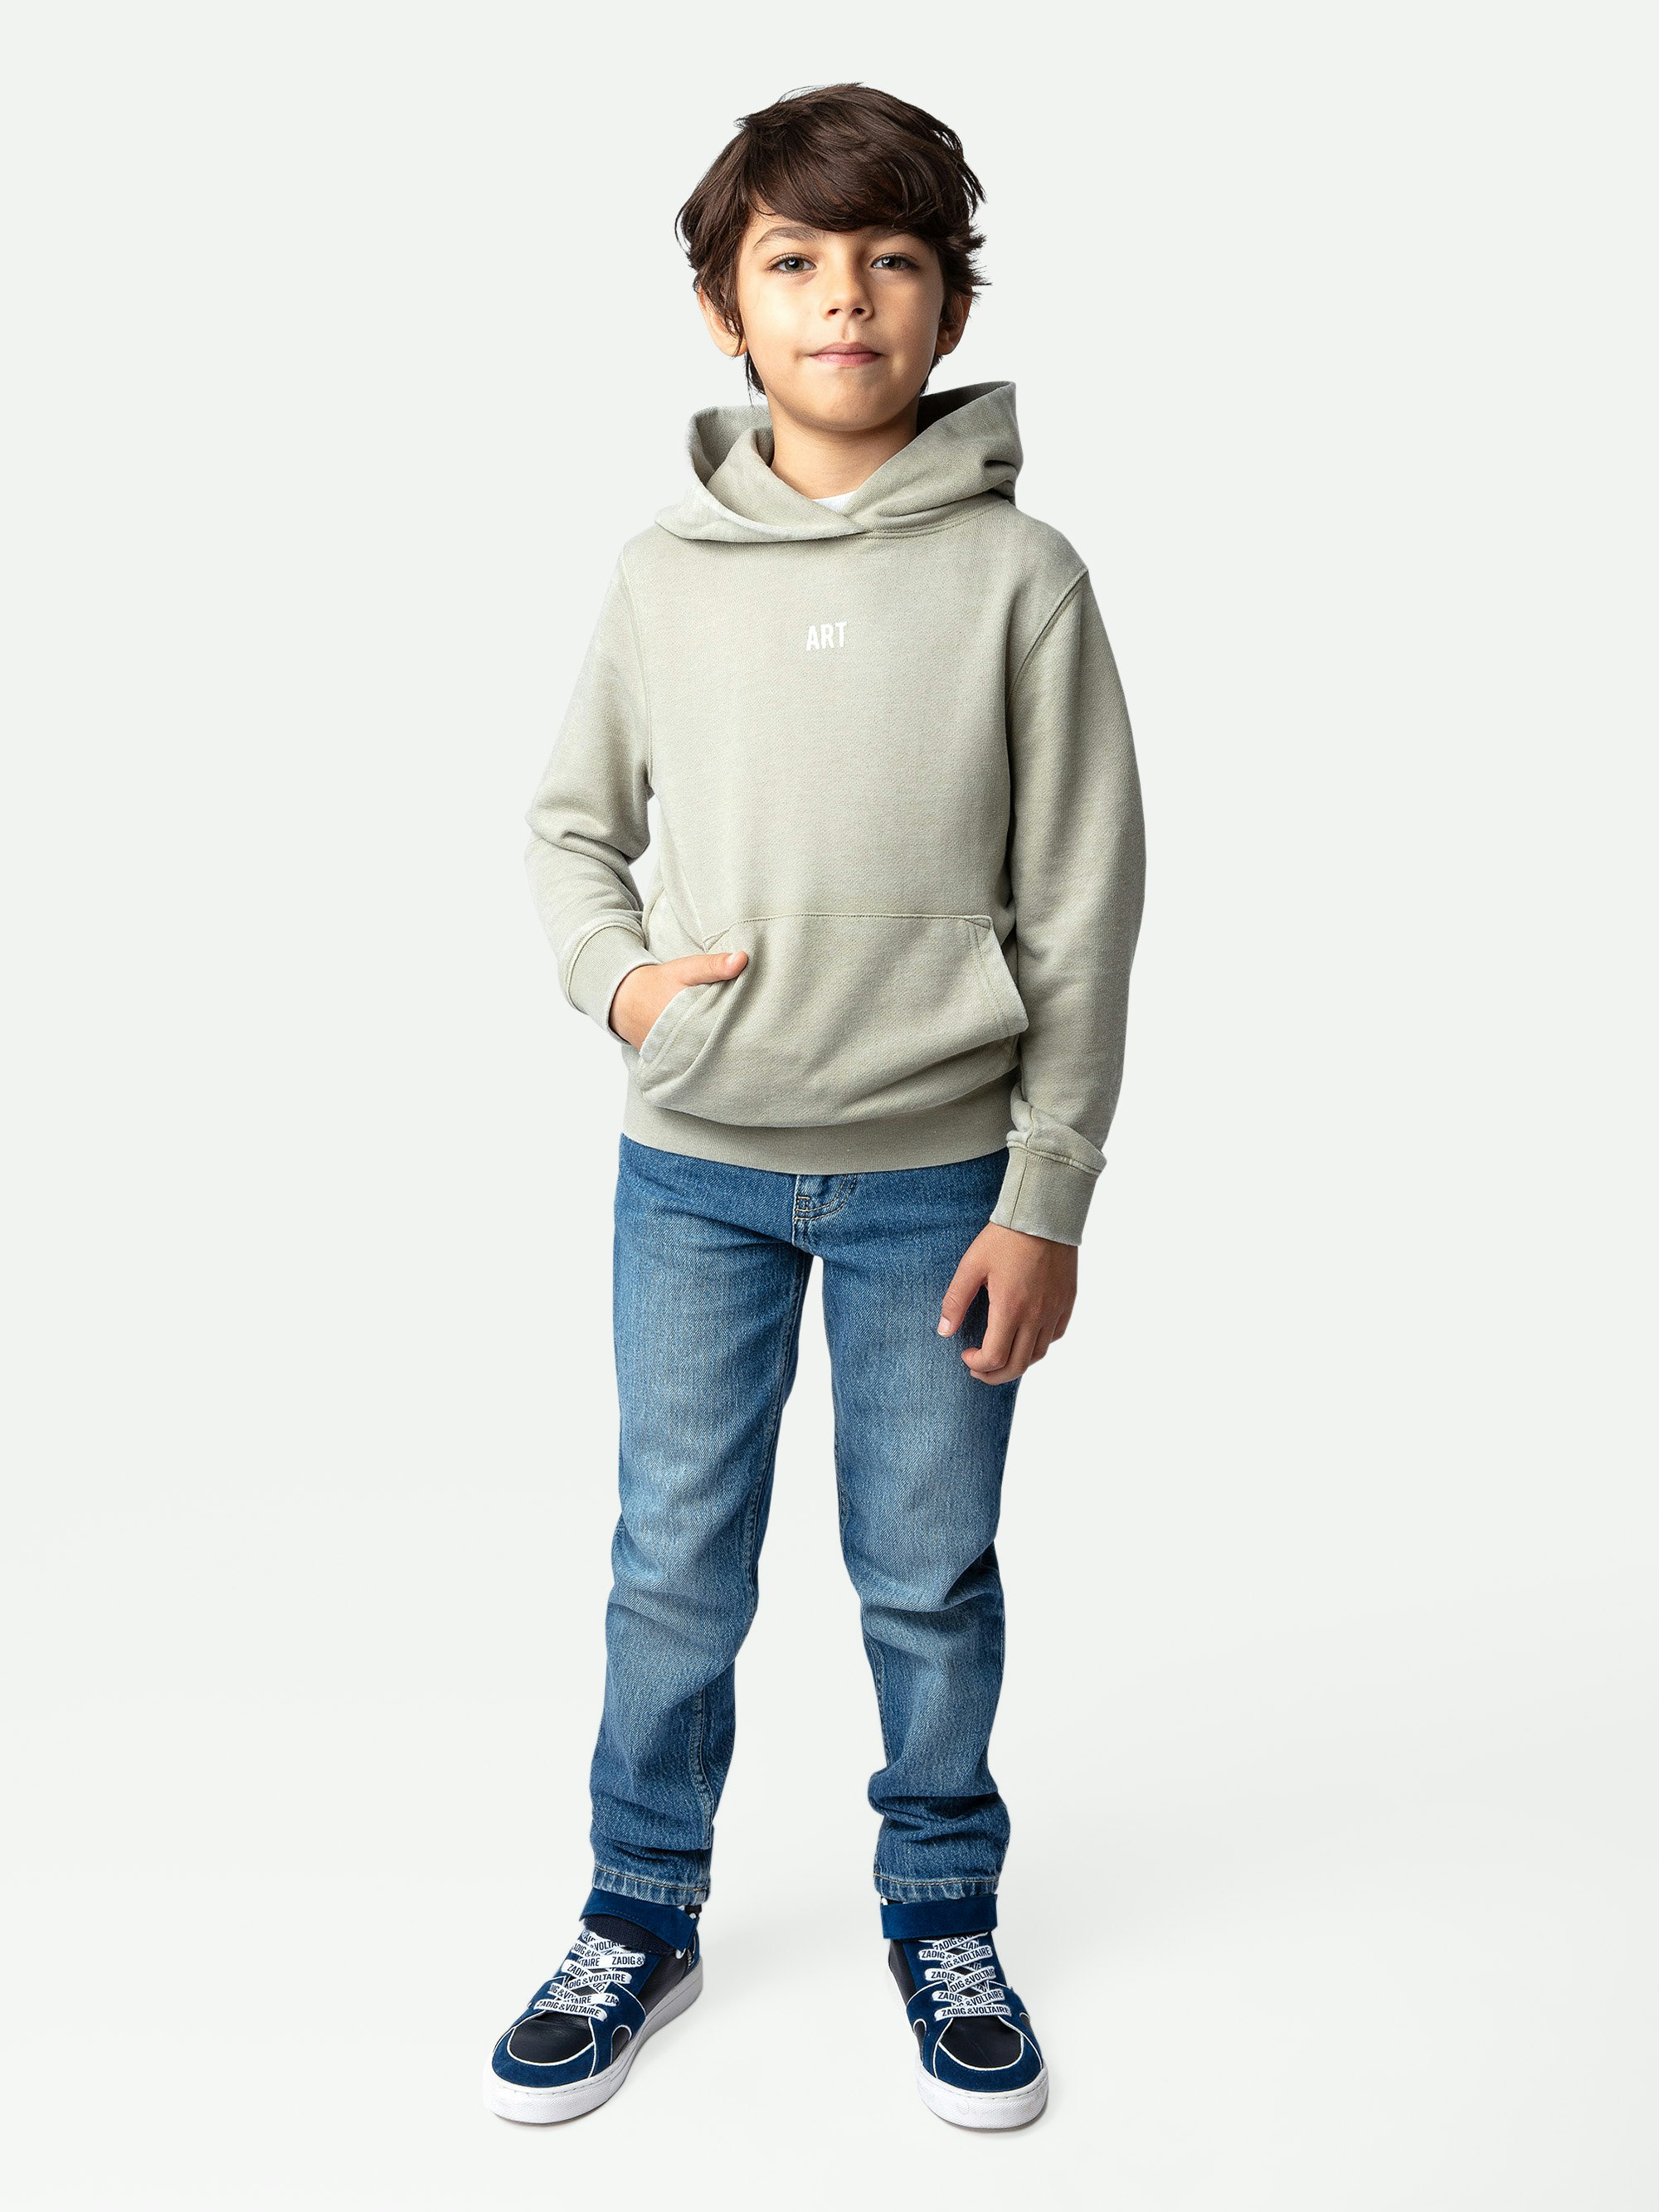 Jungen-Sweatshirt Sanchi Fotoprint - Molton-Kapuzensweatshirt für Jungen in Hellkhaki mit Illustration und Fotoprint.